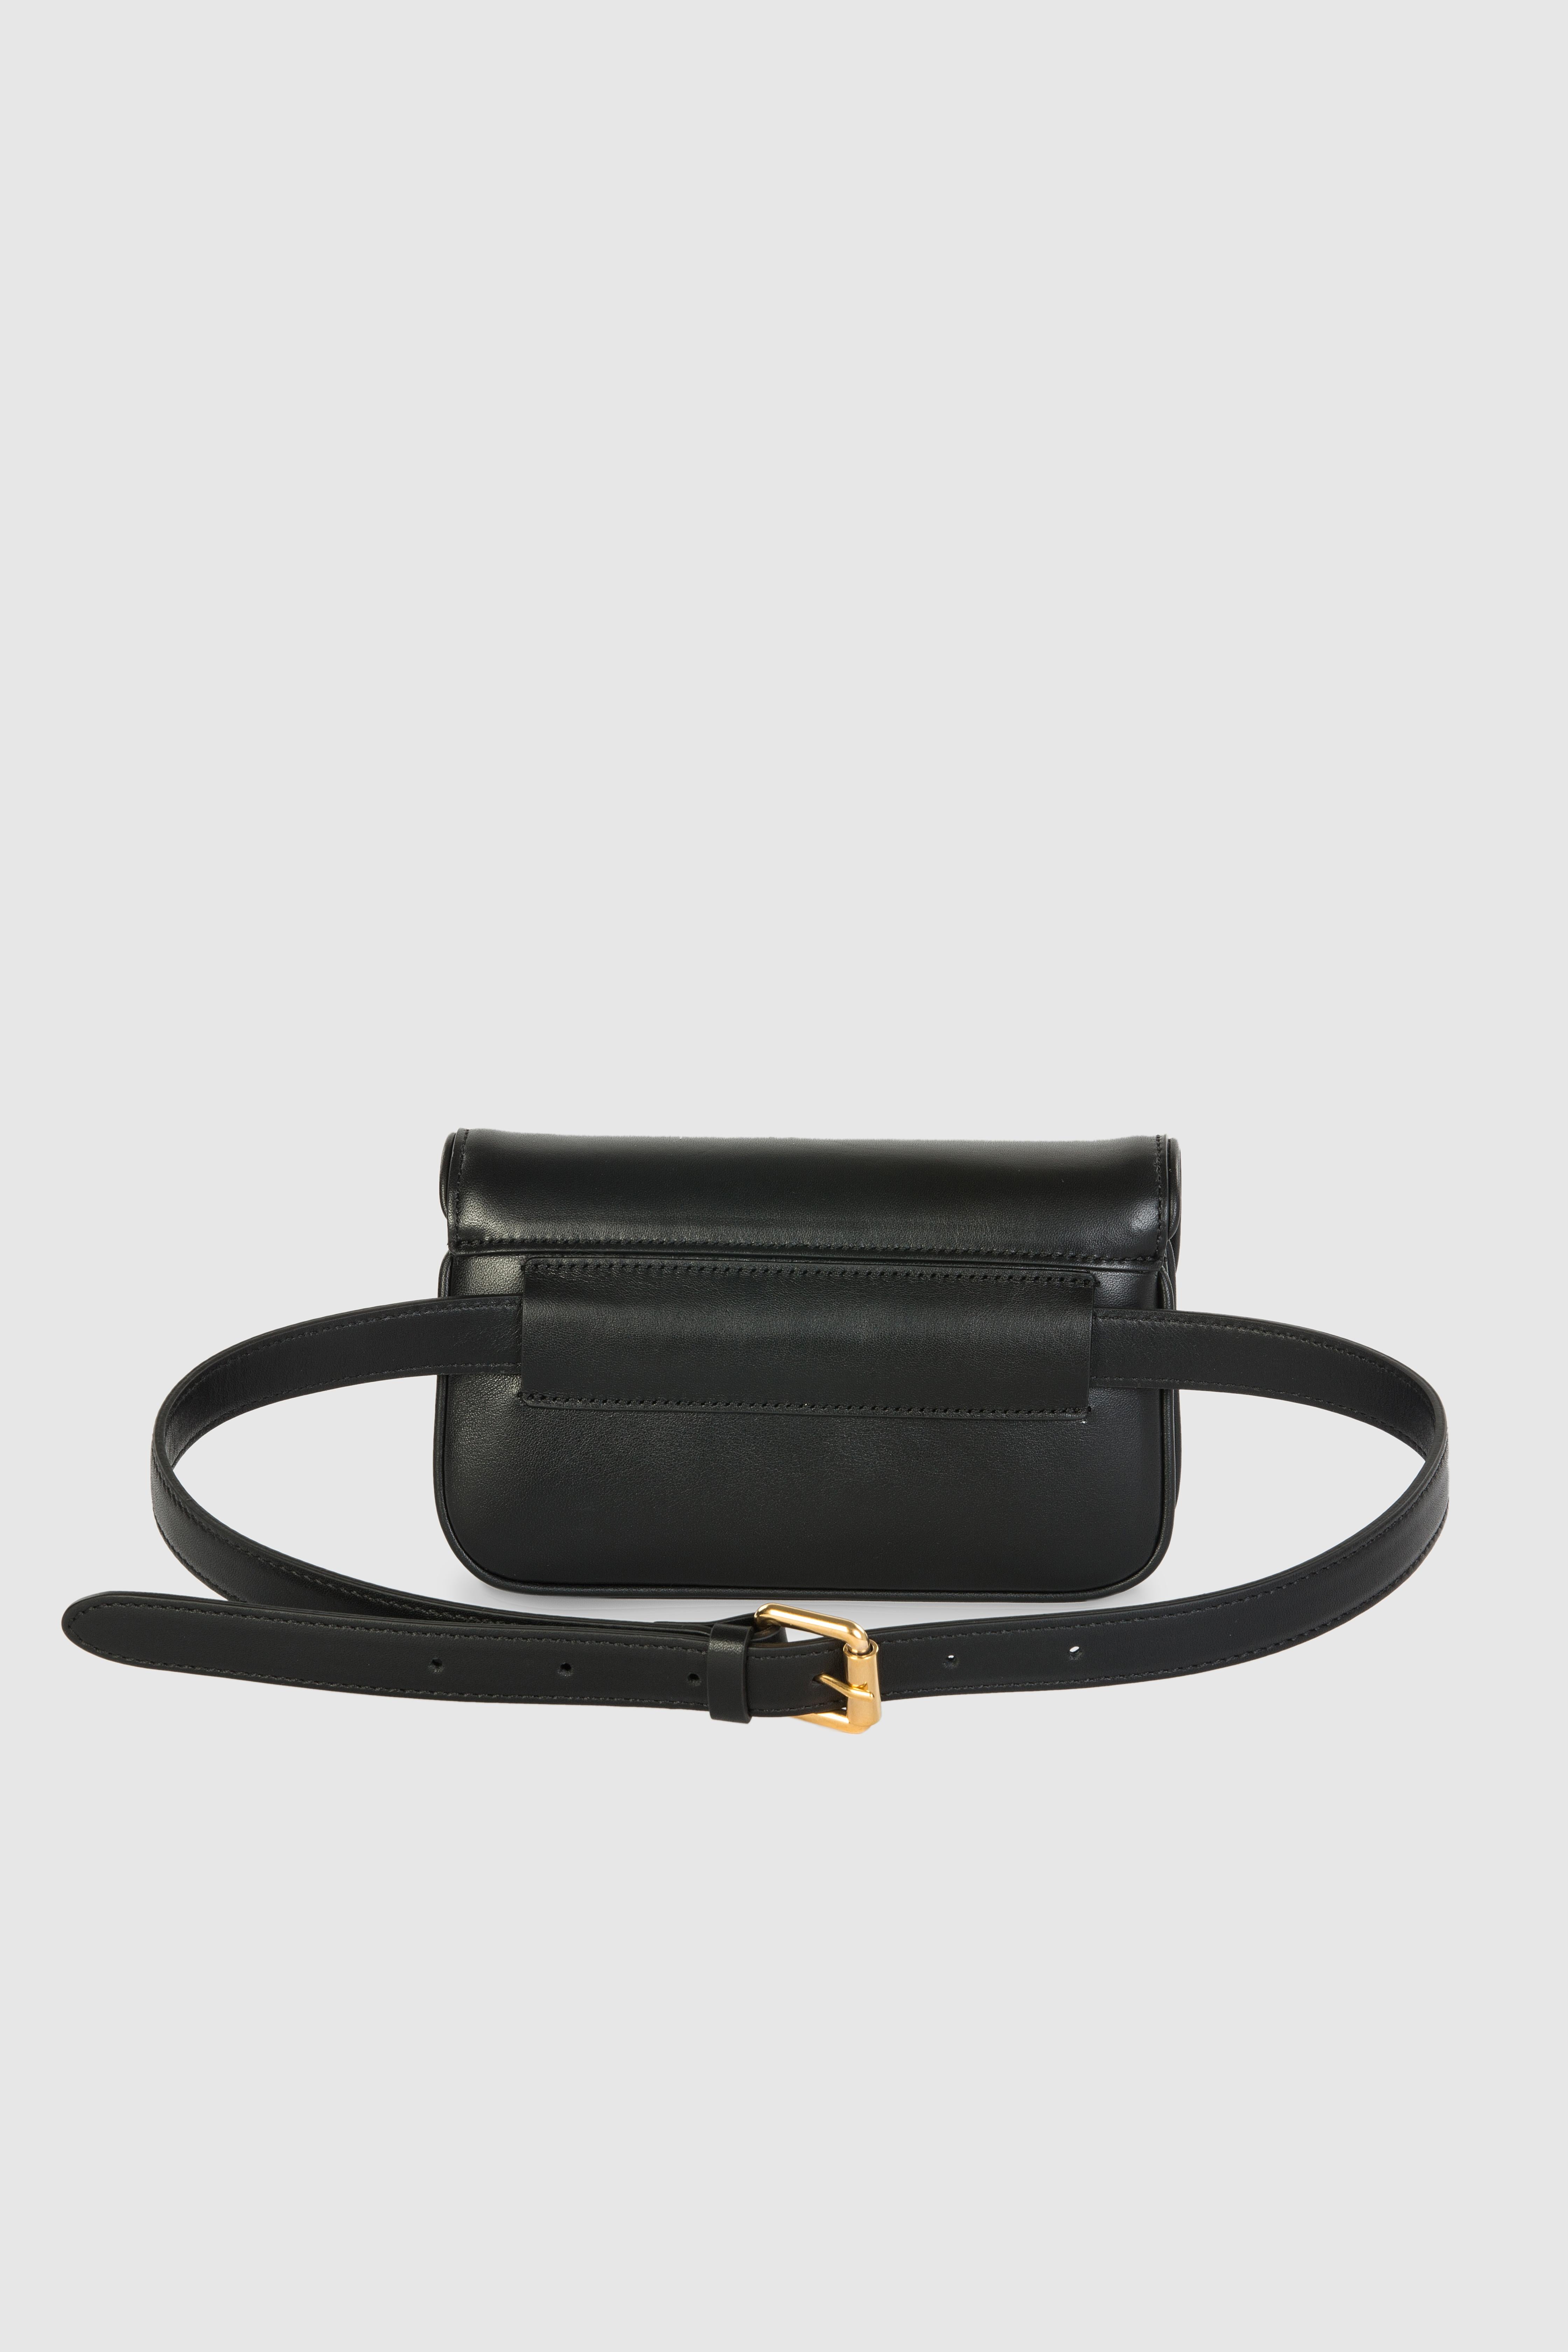 Women's or Men's Black leather gold hardware shoulder bag fanny pack NWOT